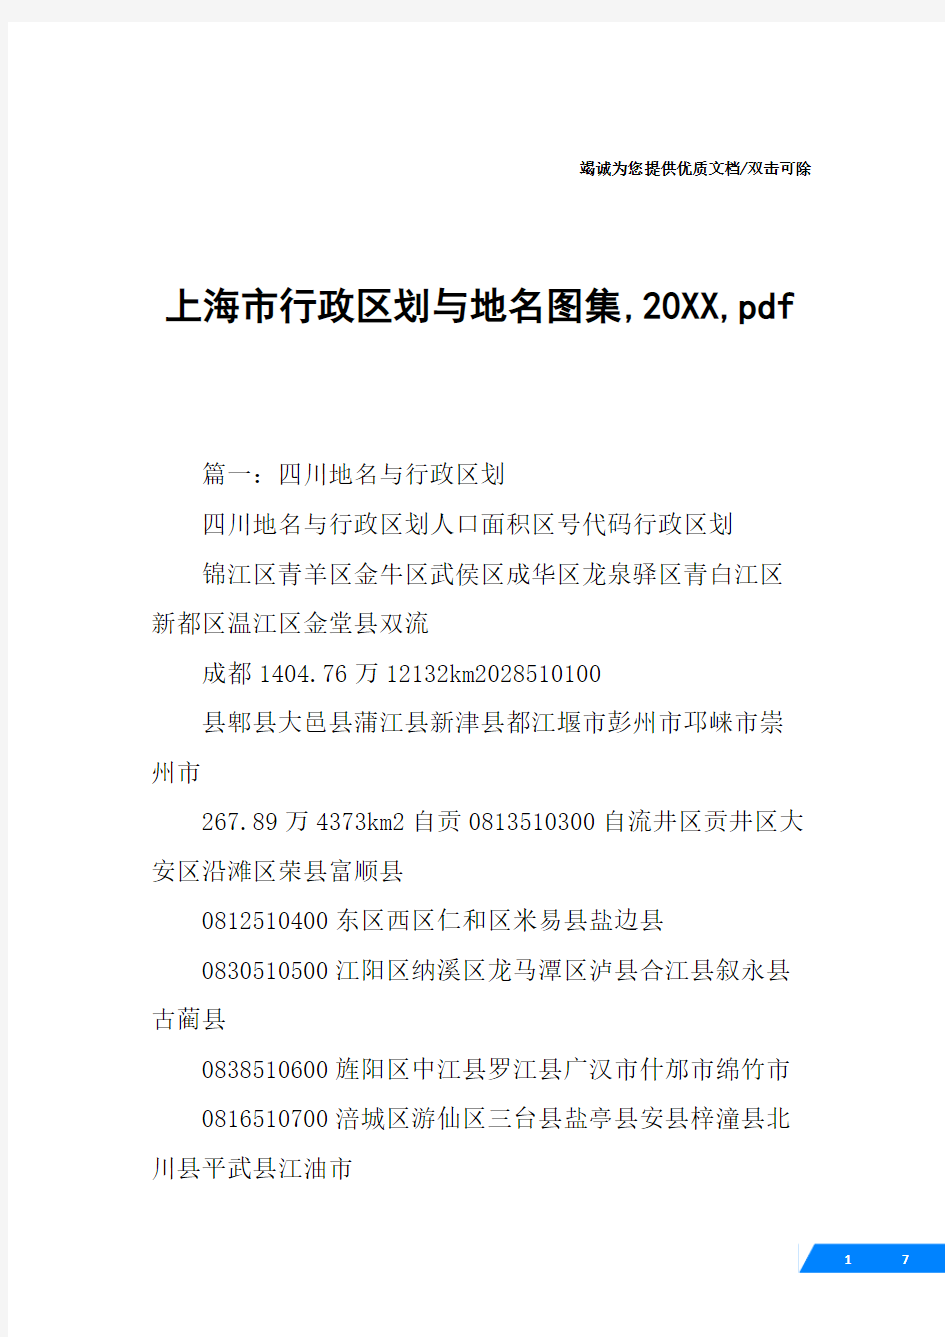 上海市行政区划与地名图集,20XX,pdf